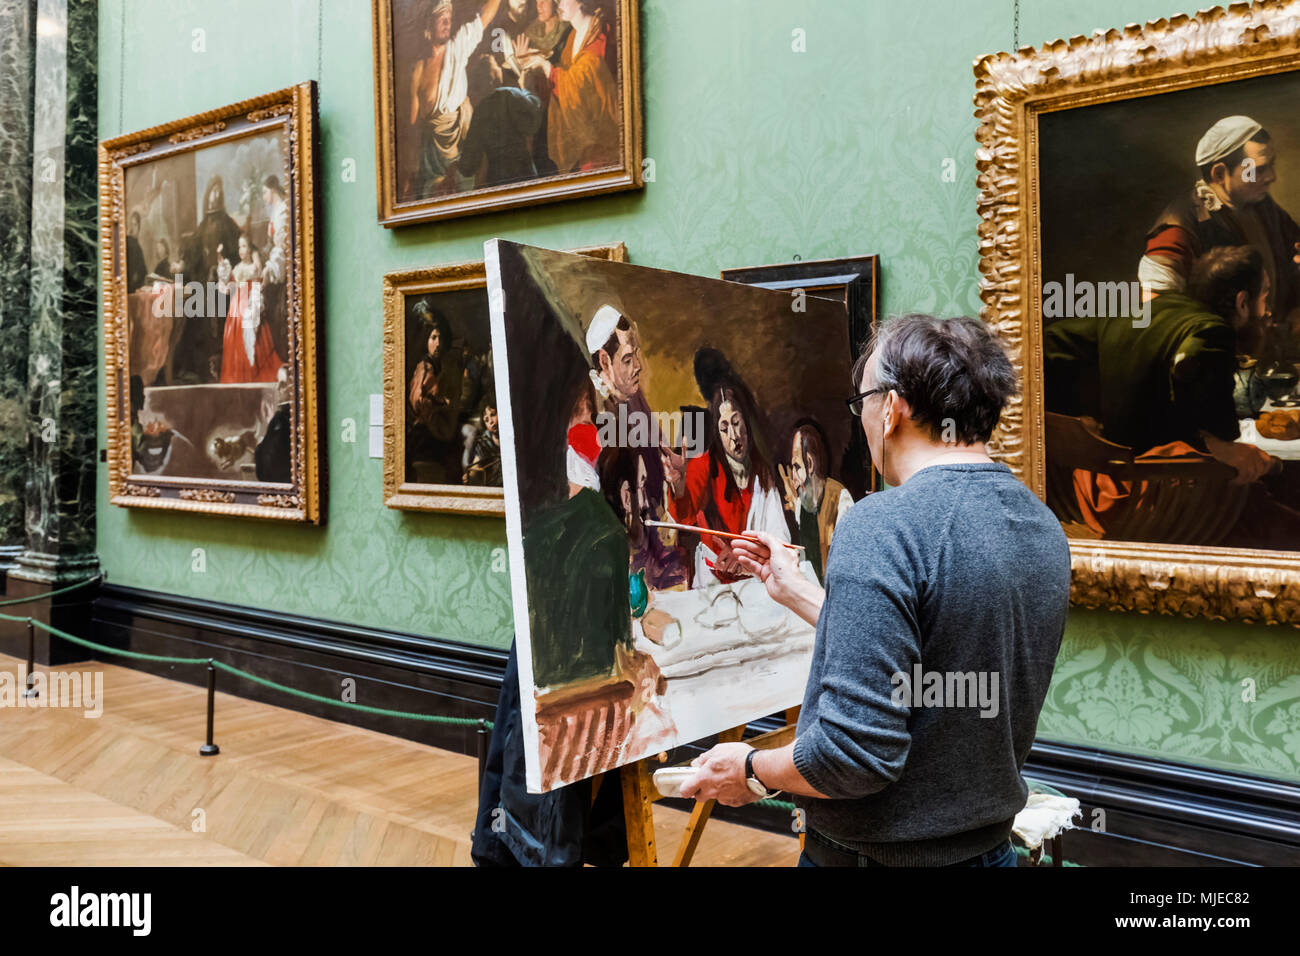 Inglaterra, Londres, Trafalgar Square, la National Gallery, artista copie ilustraciones Foto de stock